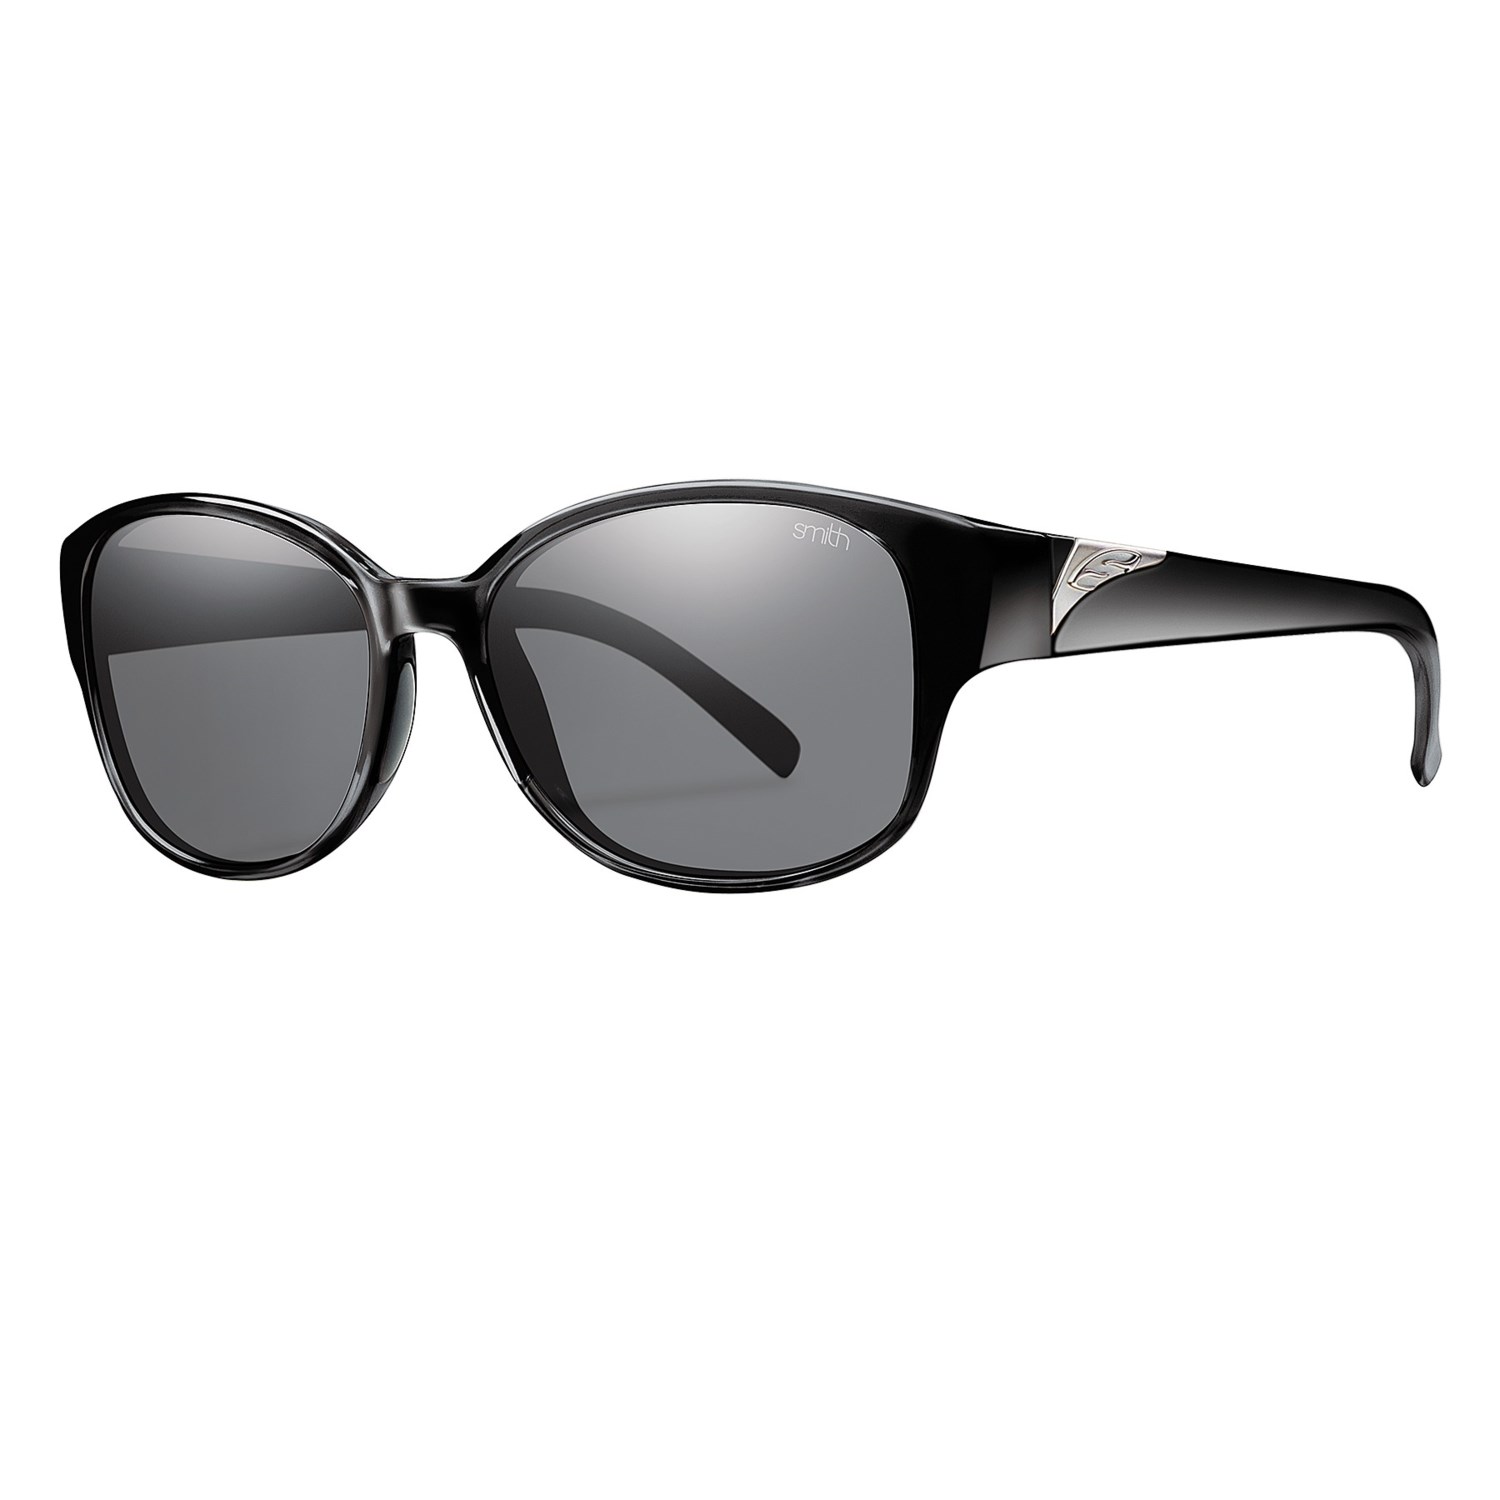 Smith Optics Lyric Sunglasses - Polarized - Save 66%